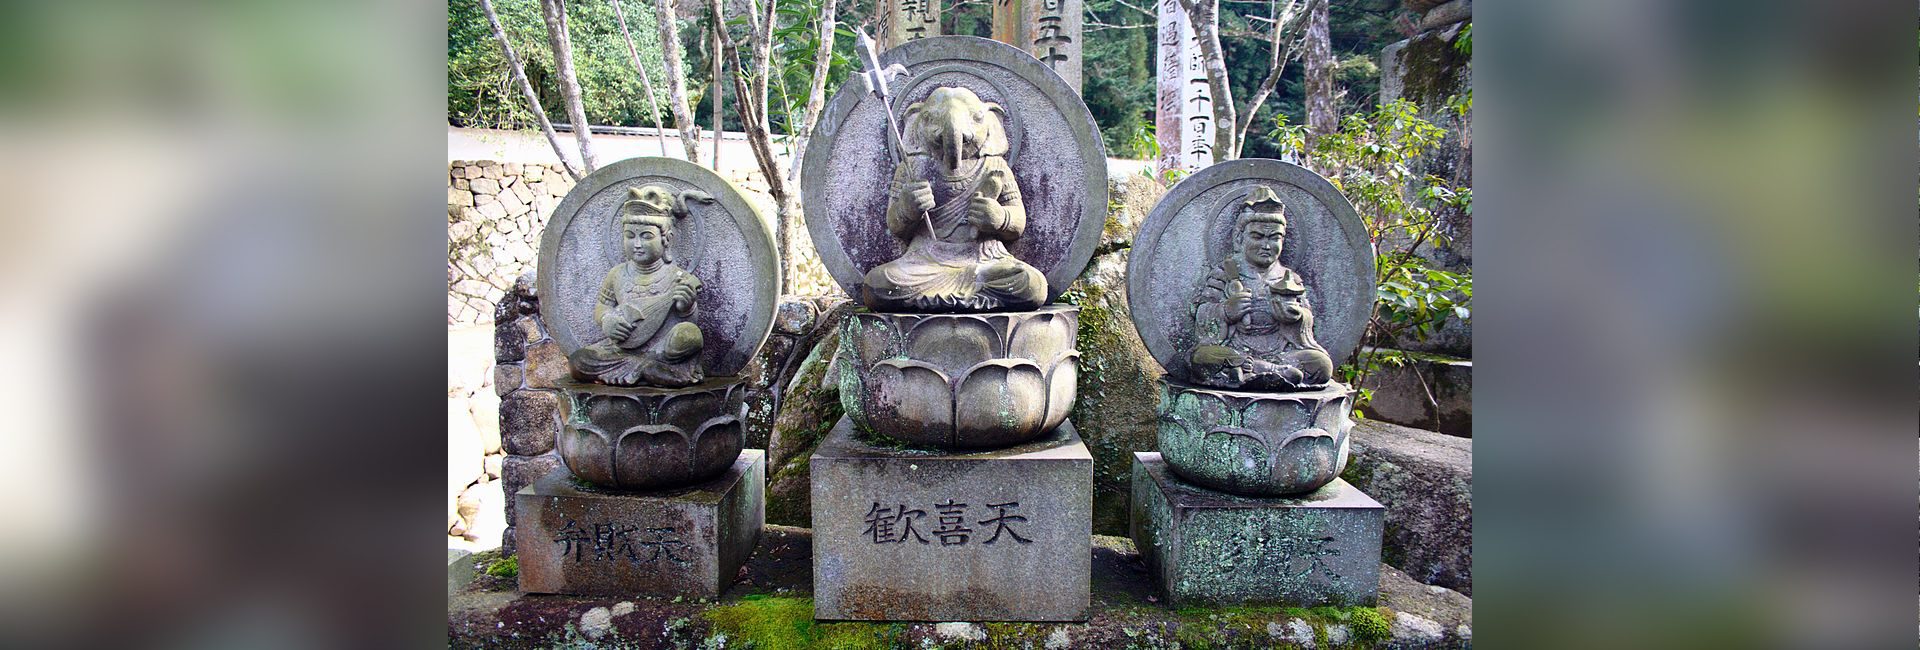 O Deus Asiático: Seguindo a trilha de Lord Ganesha